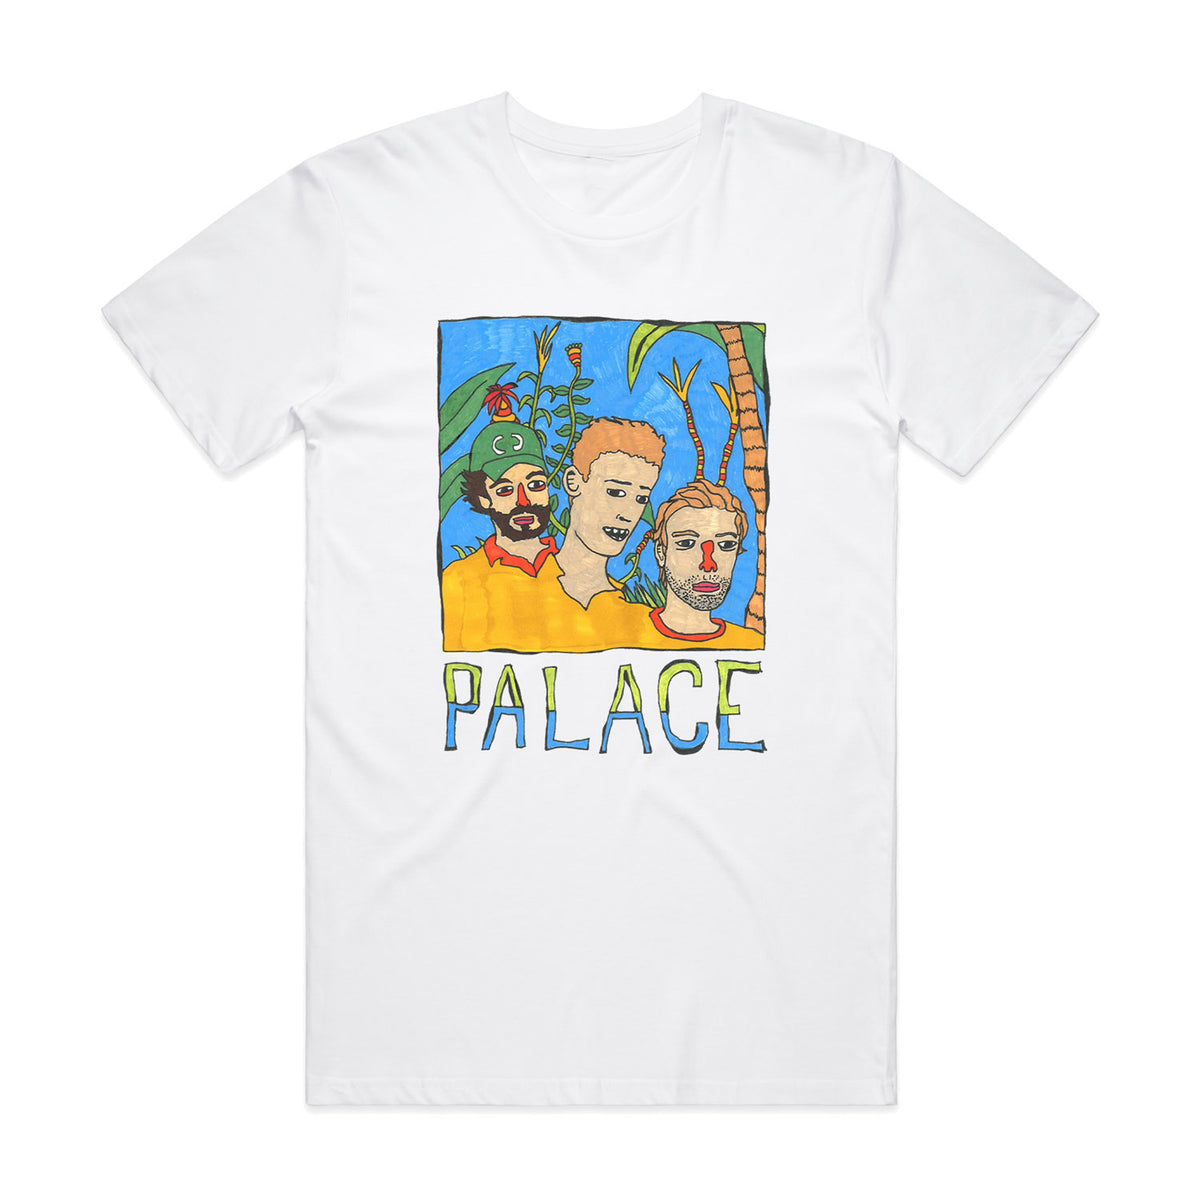 Palace Illustration (White – Are Palace